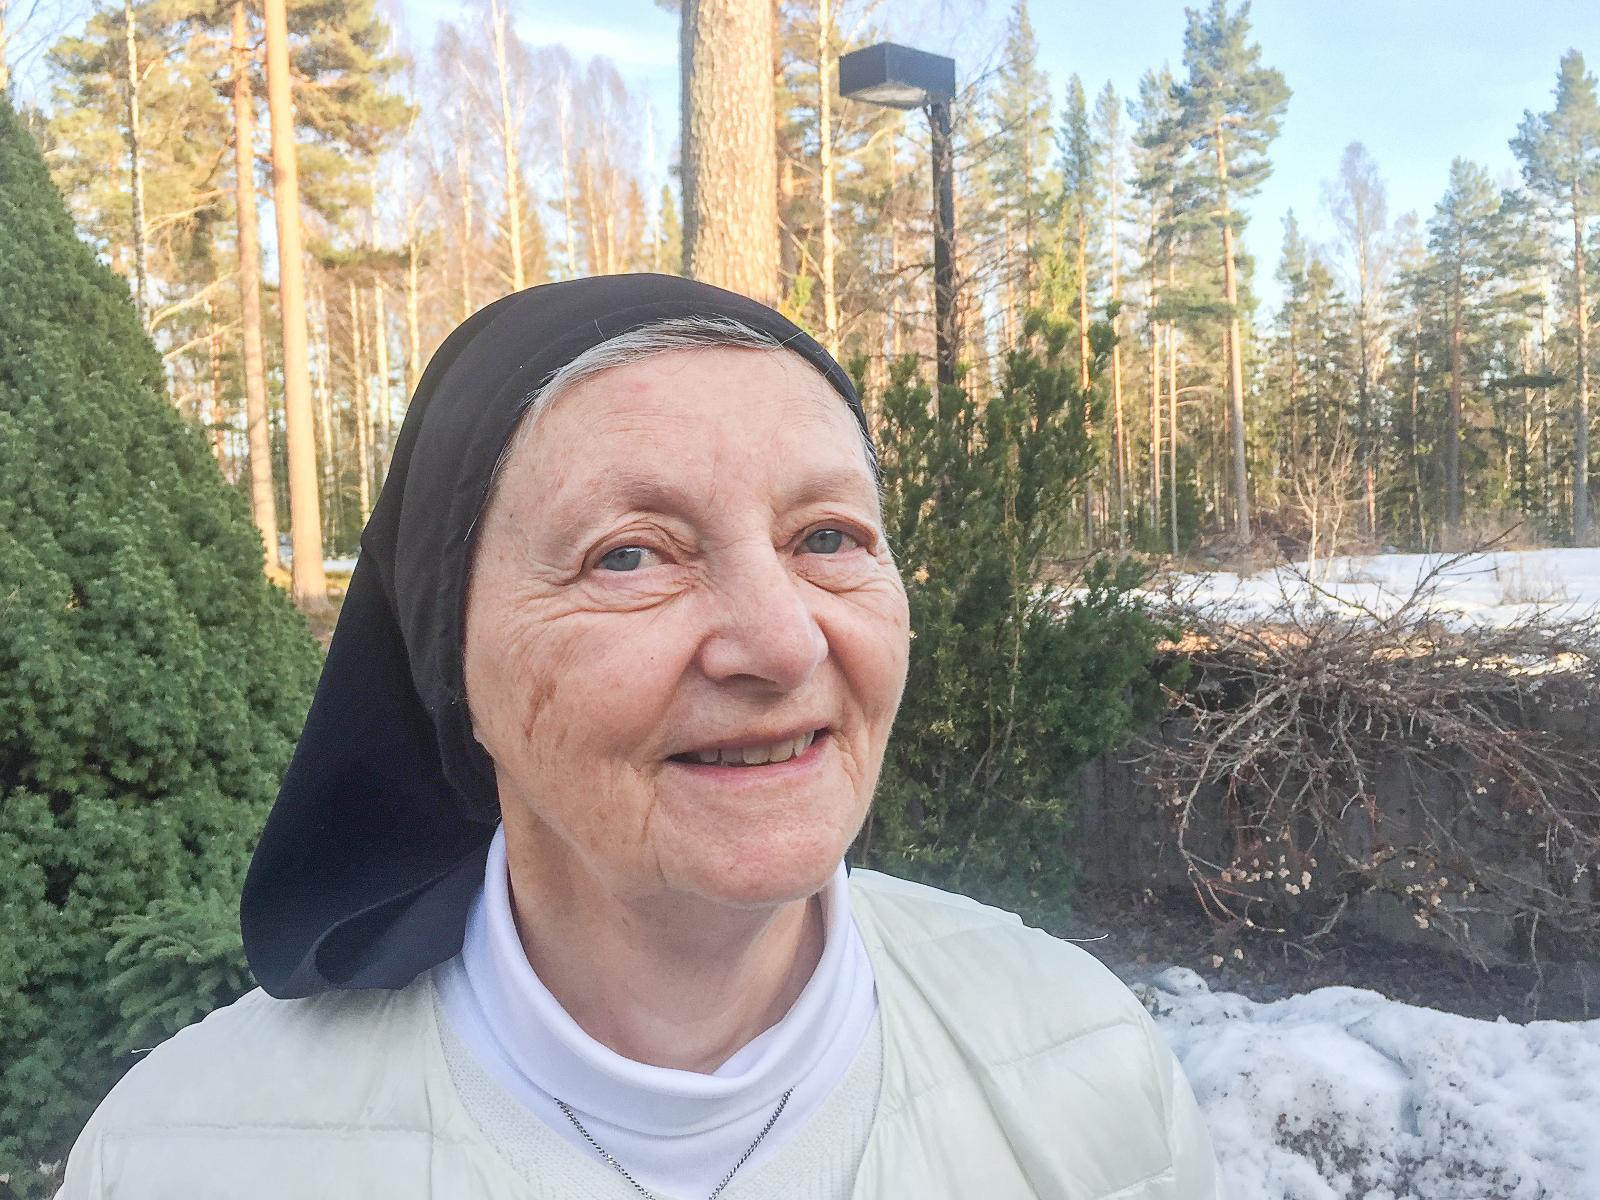 Nunna kallas tillbaka från Rättvik till Frankrike inför ålderdomen